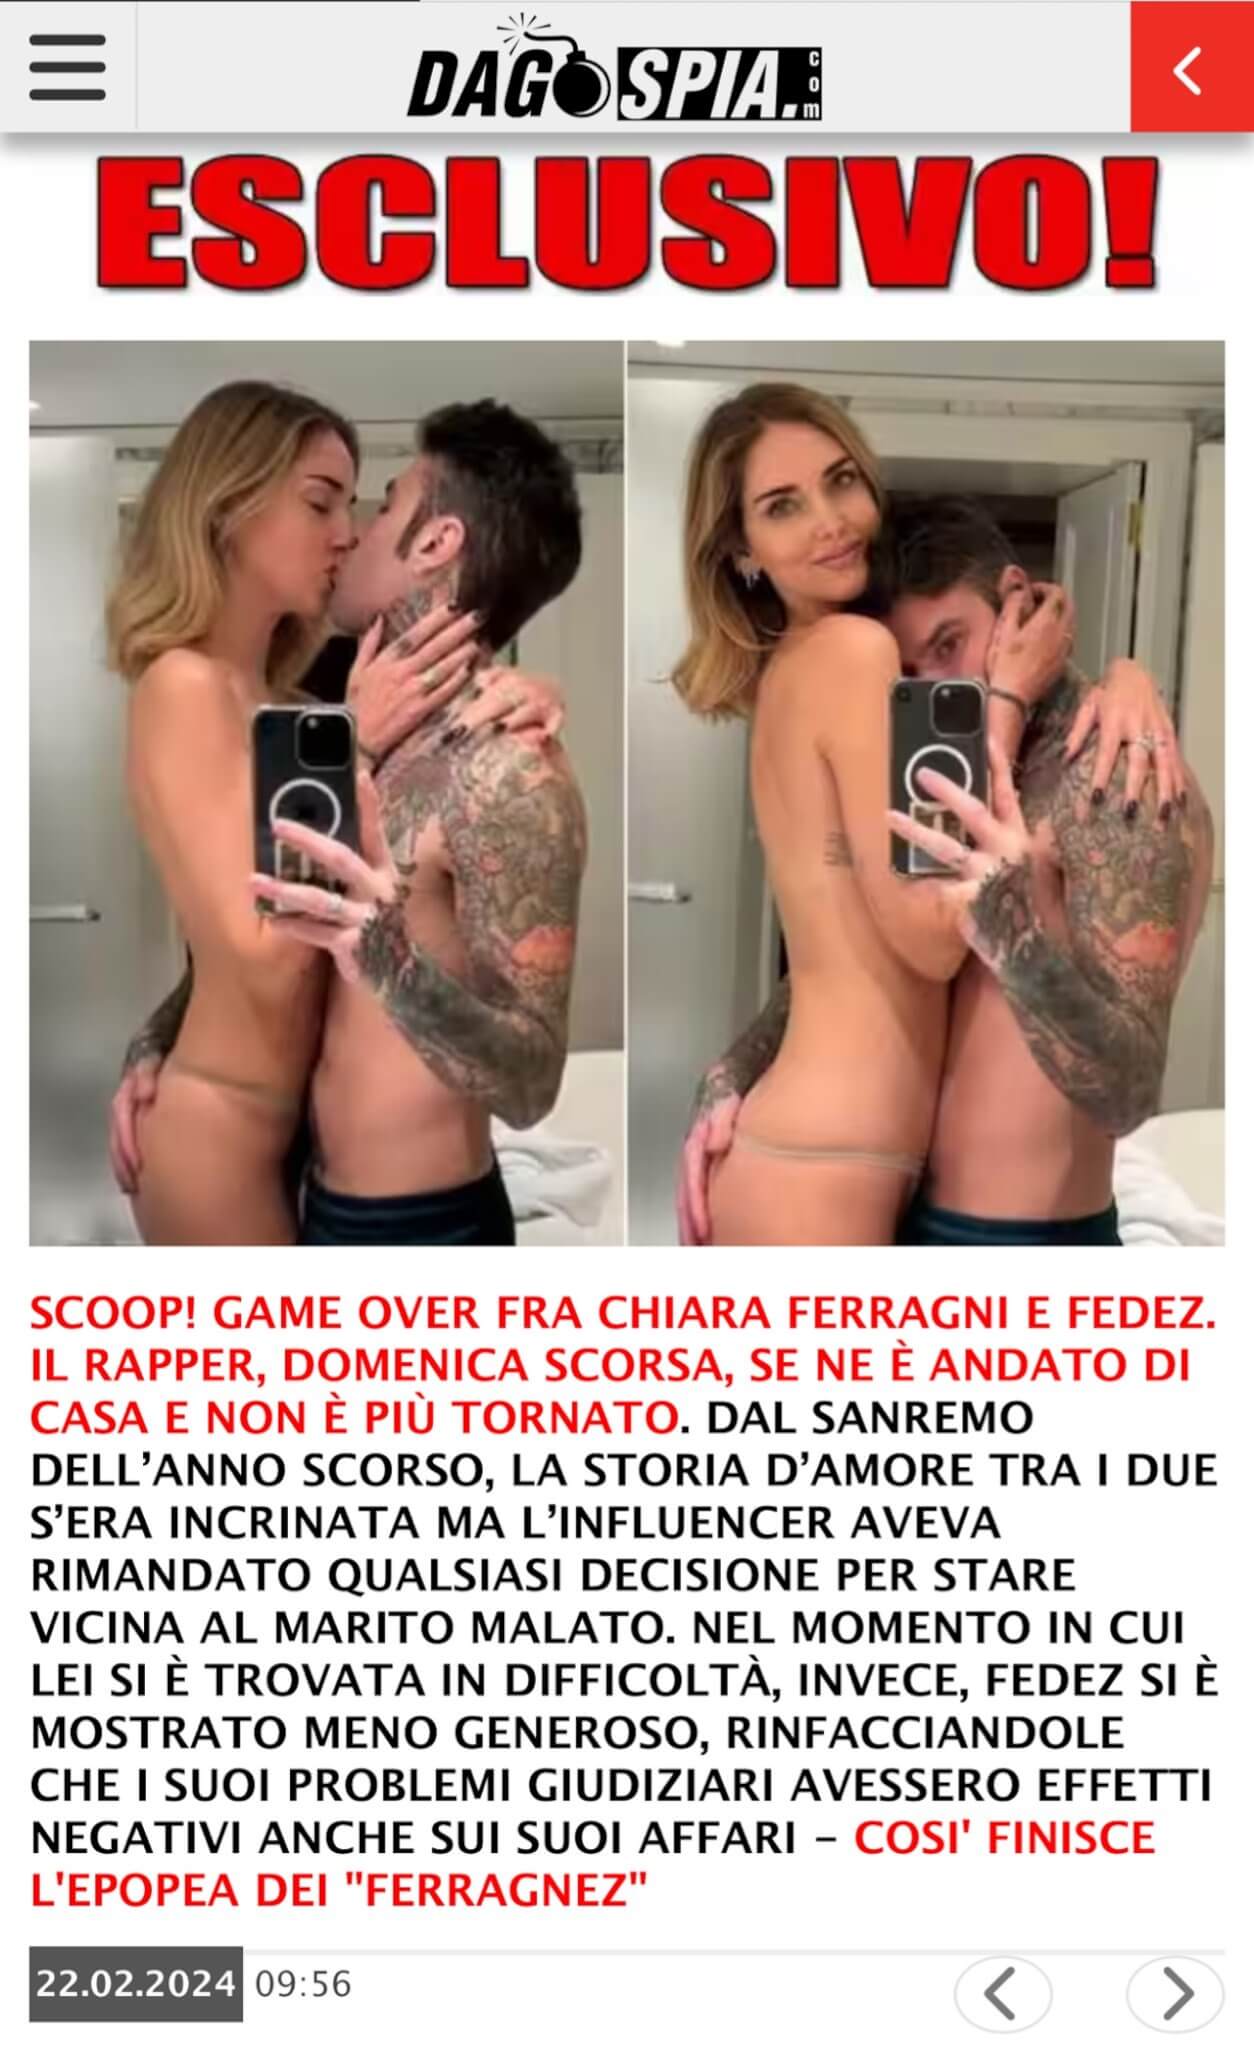 "Chiara Ferragni e Fedez si sono lasciati", lo scoop di Dagospia. "Finiscono così i Ferragnez" - Ferragnez Dagospia - Gay.it